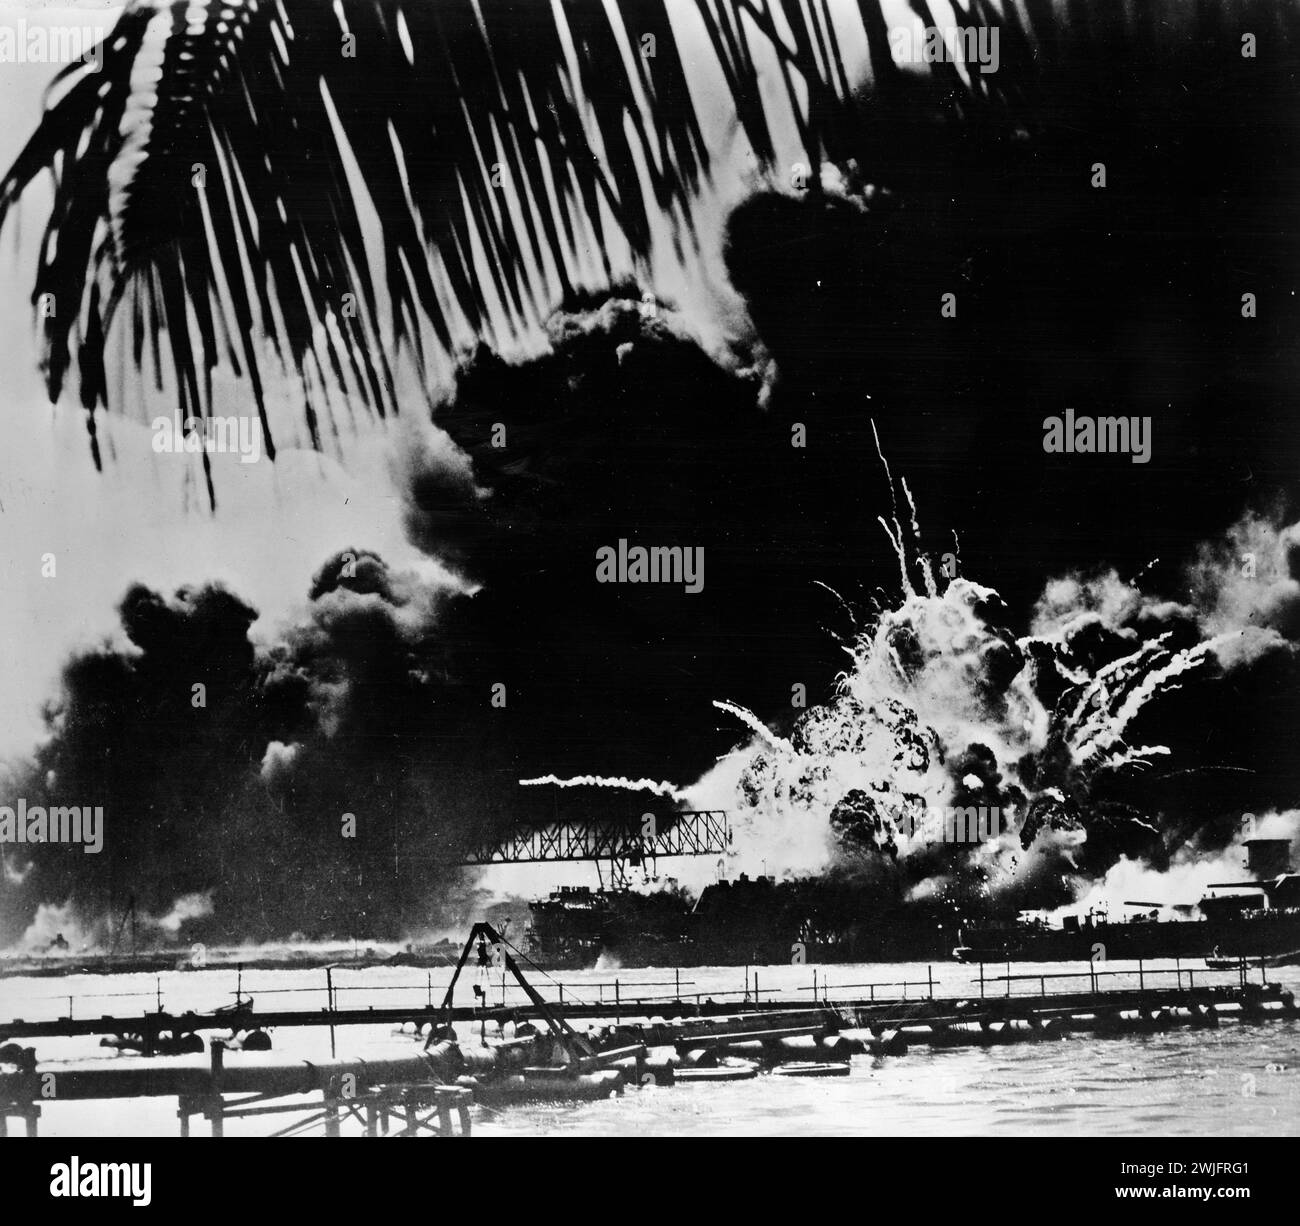 Seconde Guerre mondiale - la base navale de Pearl Harbor et l'U.S.S. Shaw s'enflamment après l'attaque japonaise - 7 décembre 1941 Banque D'Images